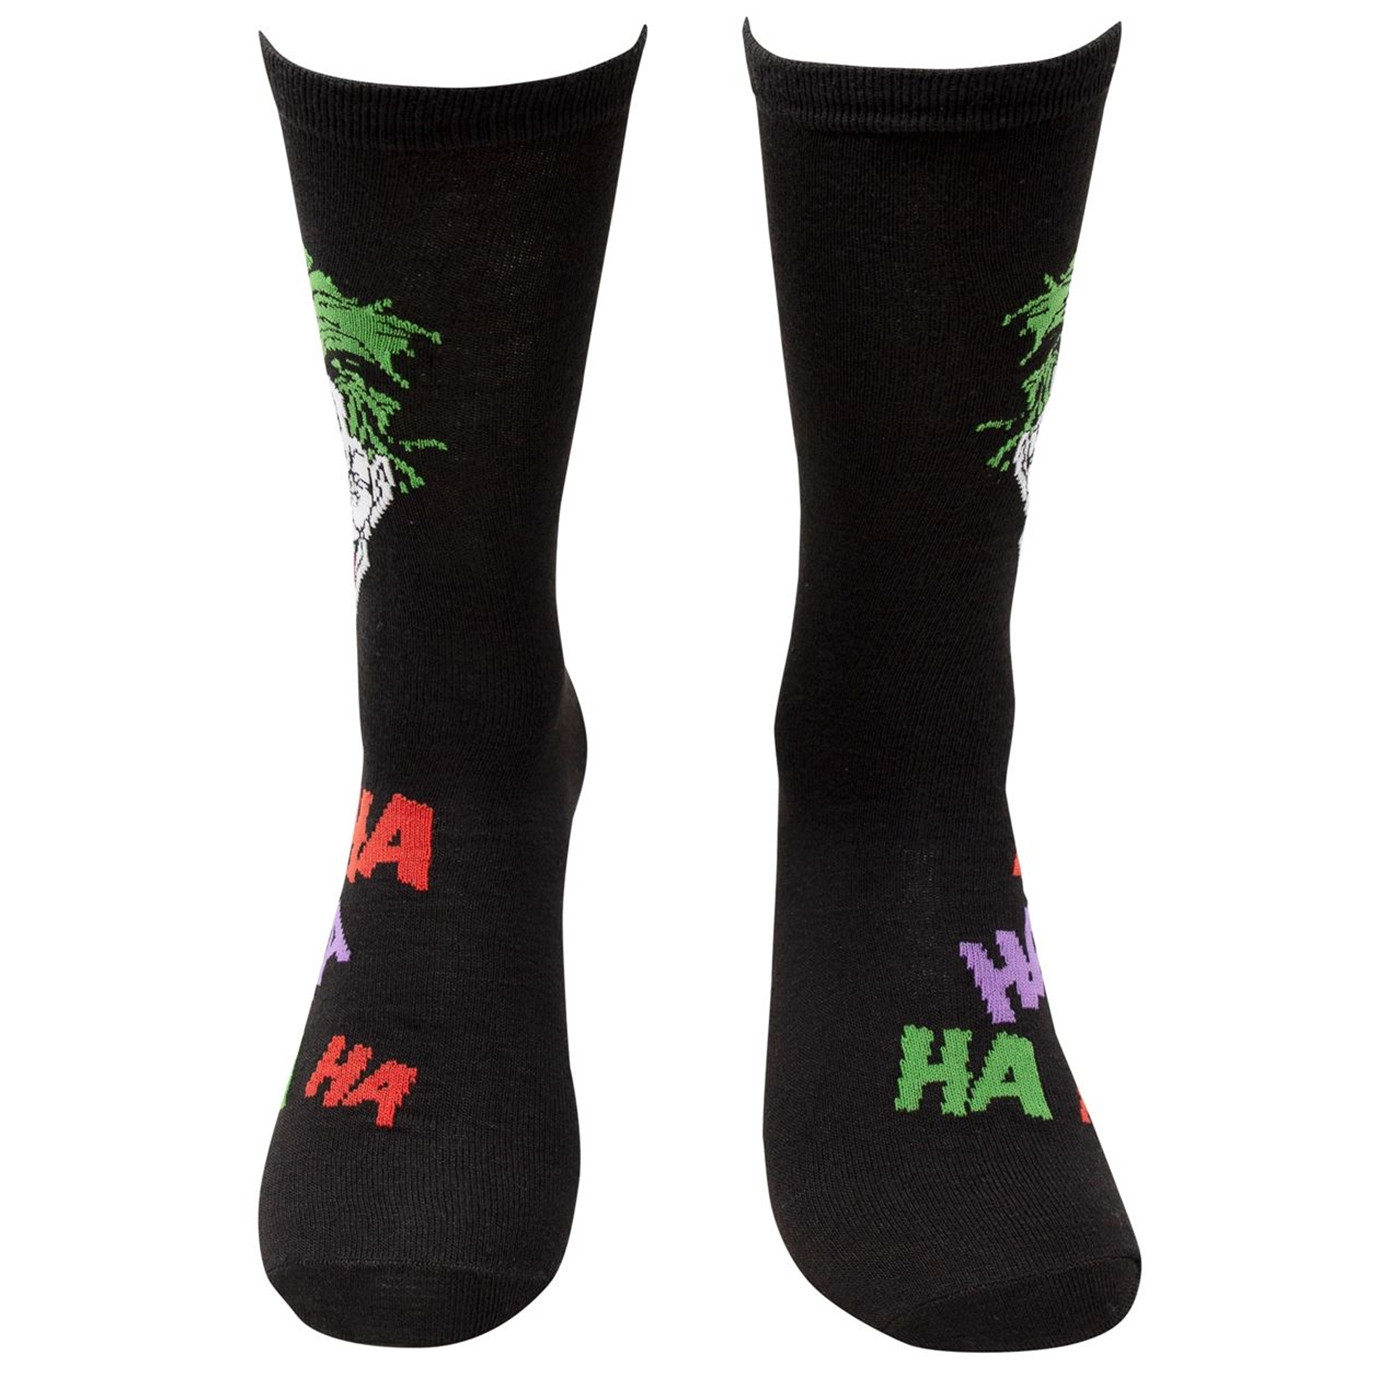 Joker Haha and Faces Men's 2-Pack Crew Socks